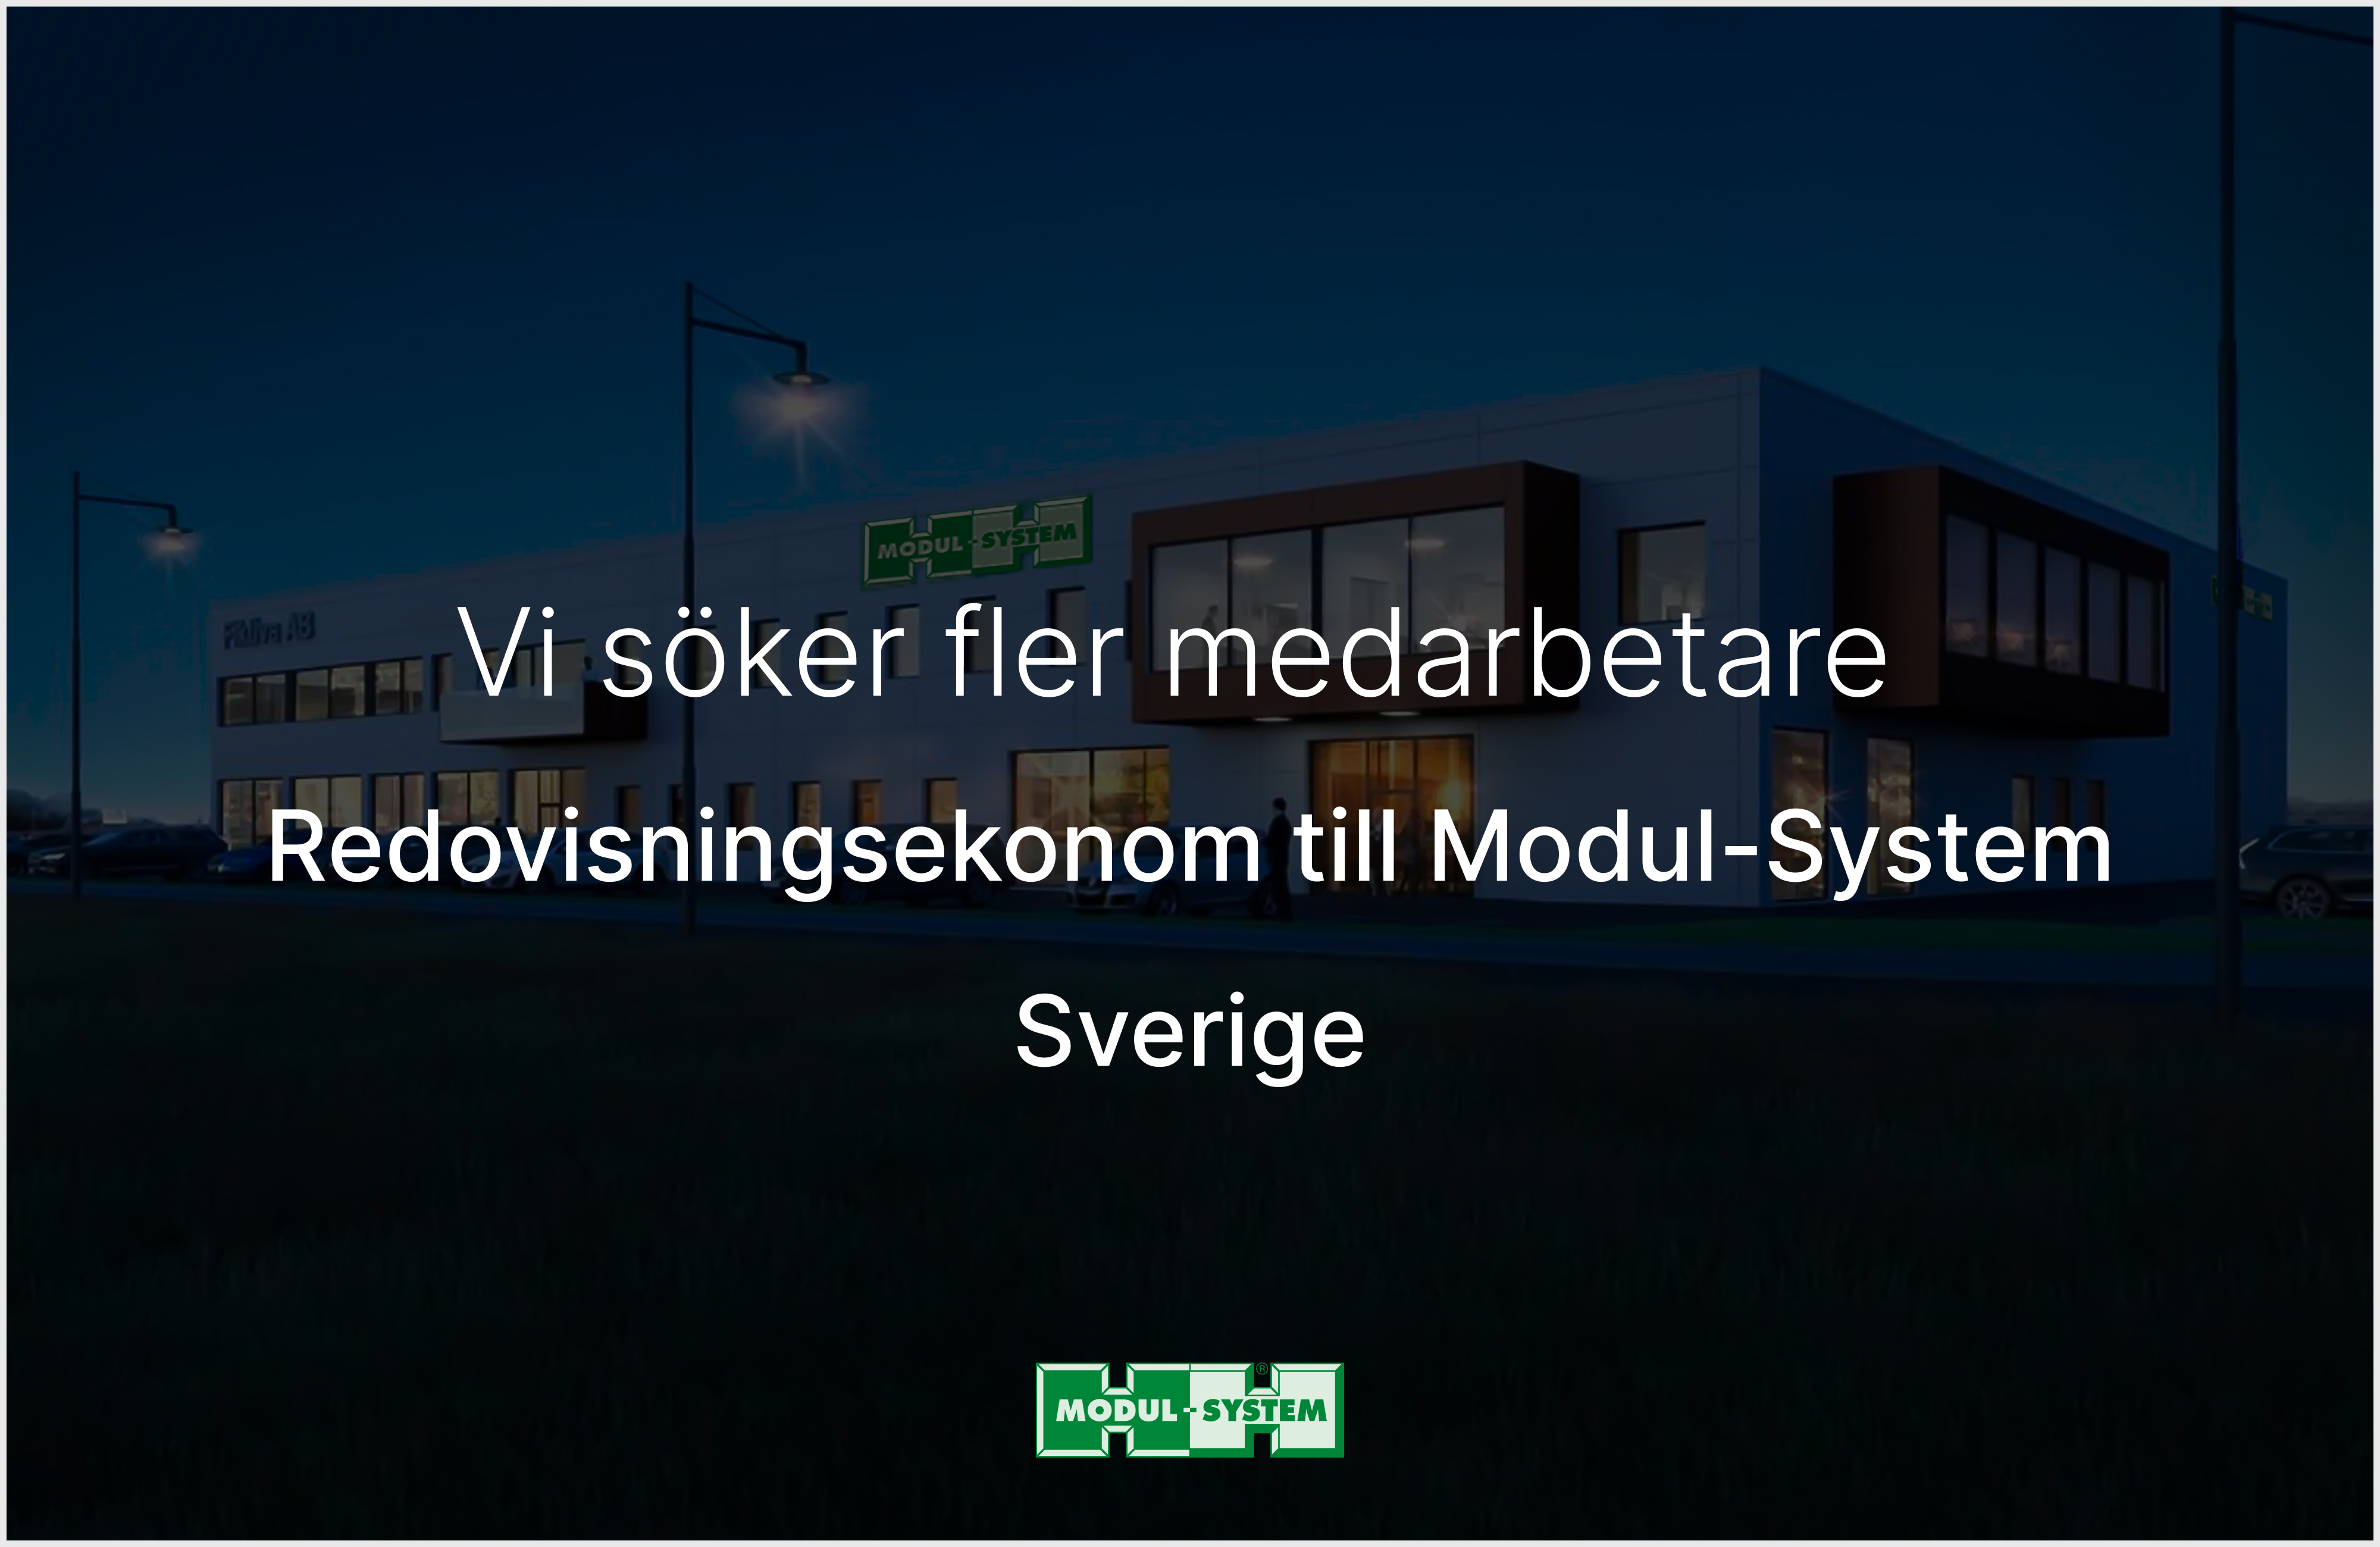 Redovisningsekonom till Modul-System Sverige